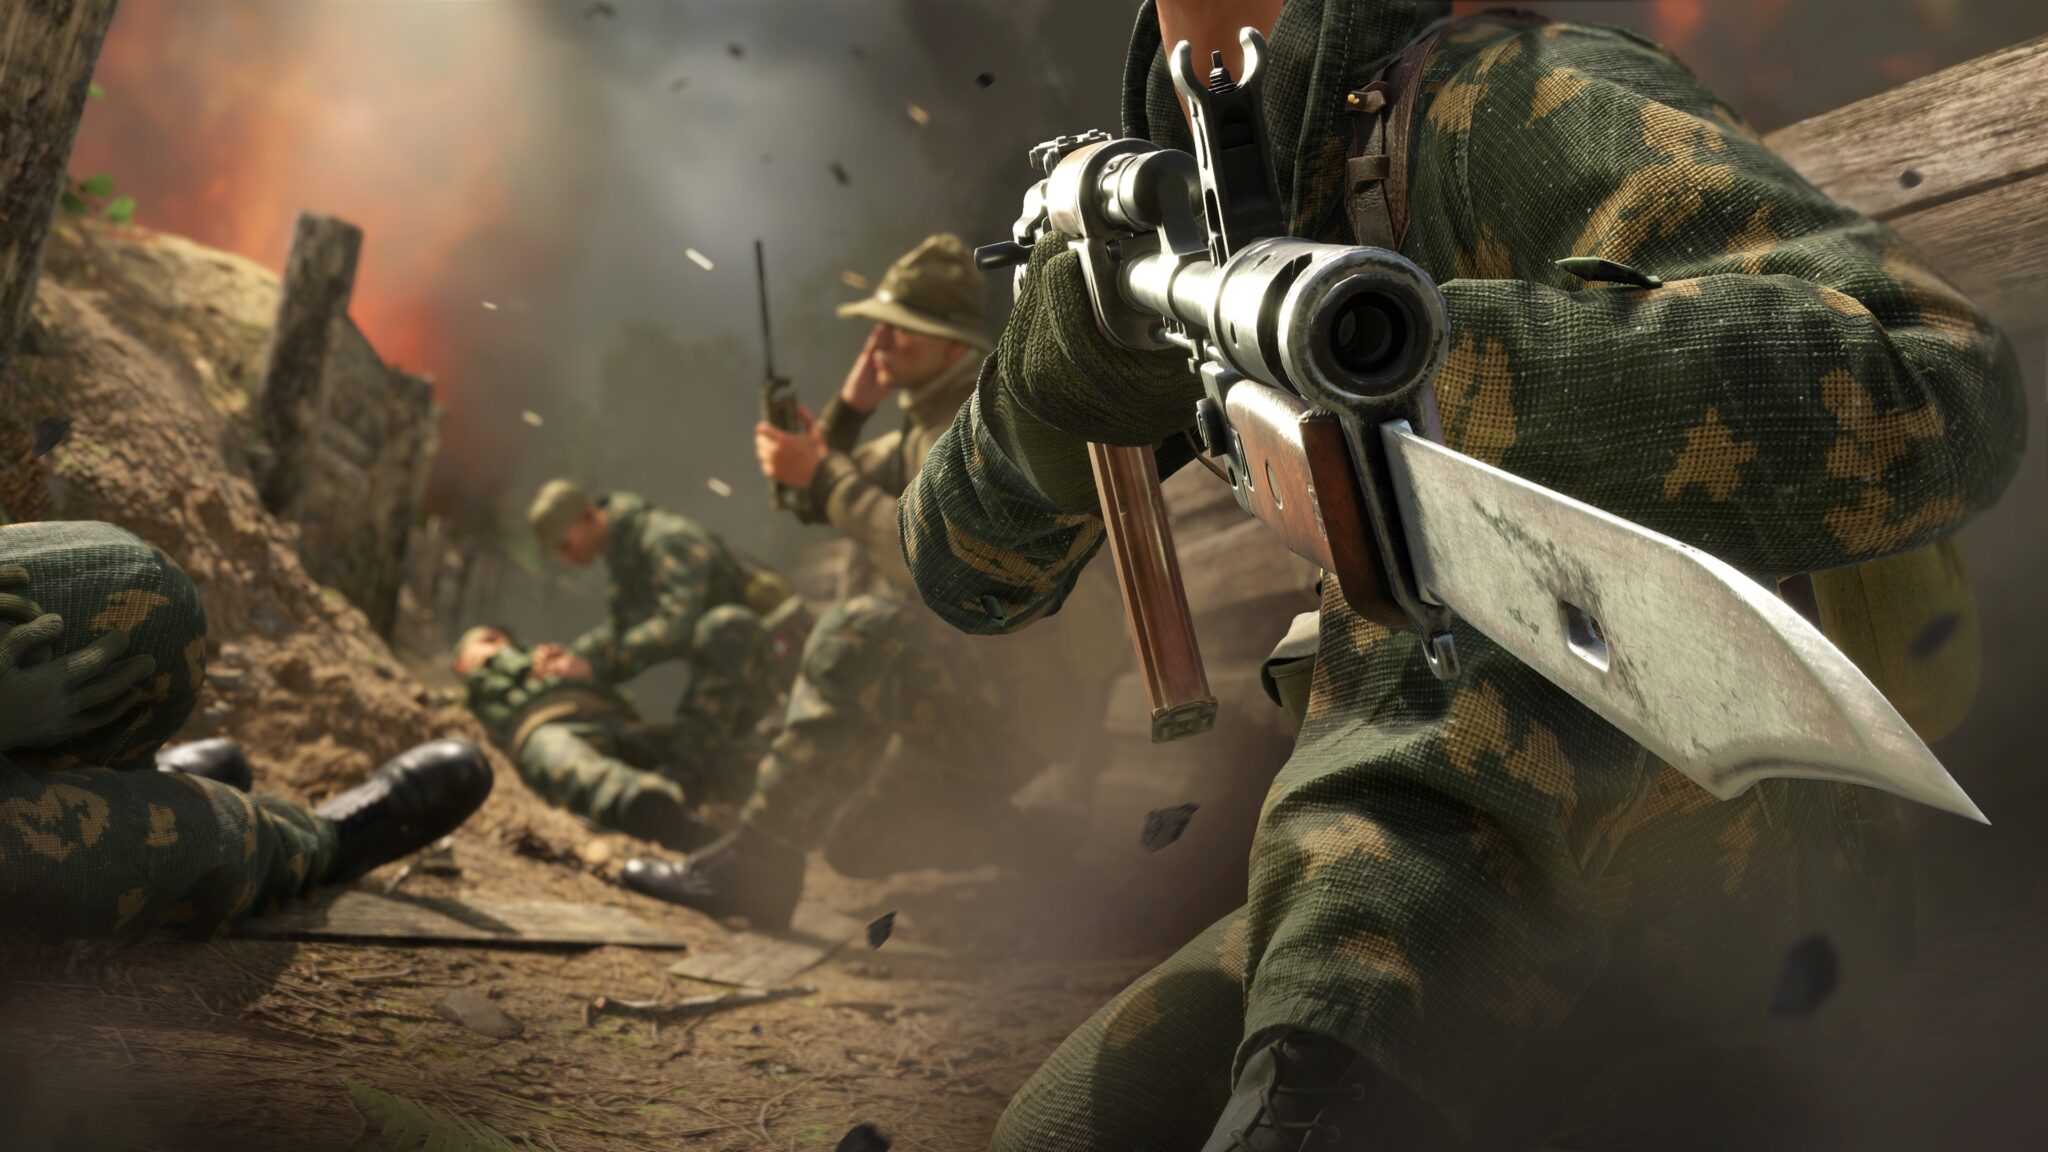 Arma Reforger, Bohemia Interactive, Arma Reforger dostala nový velký update